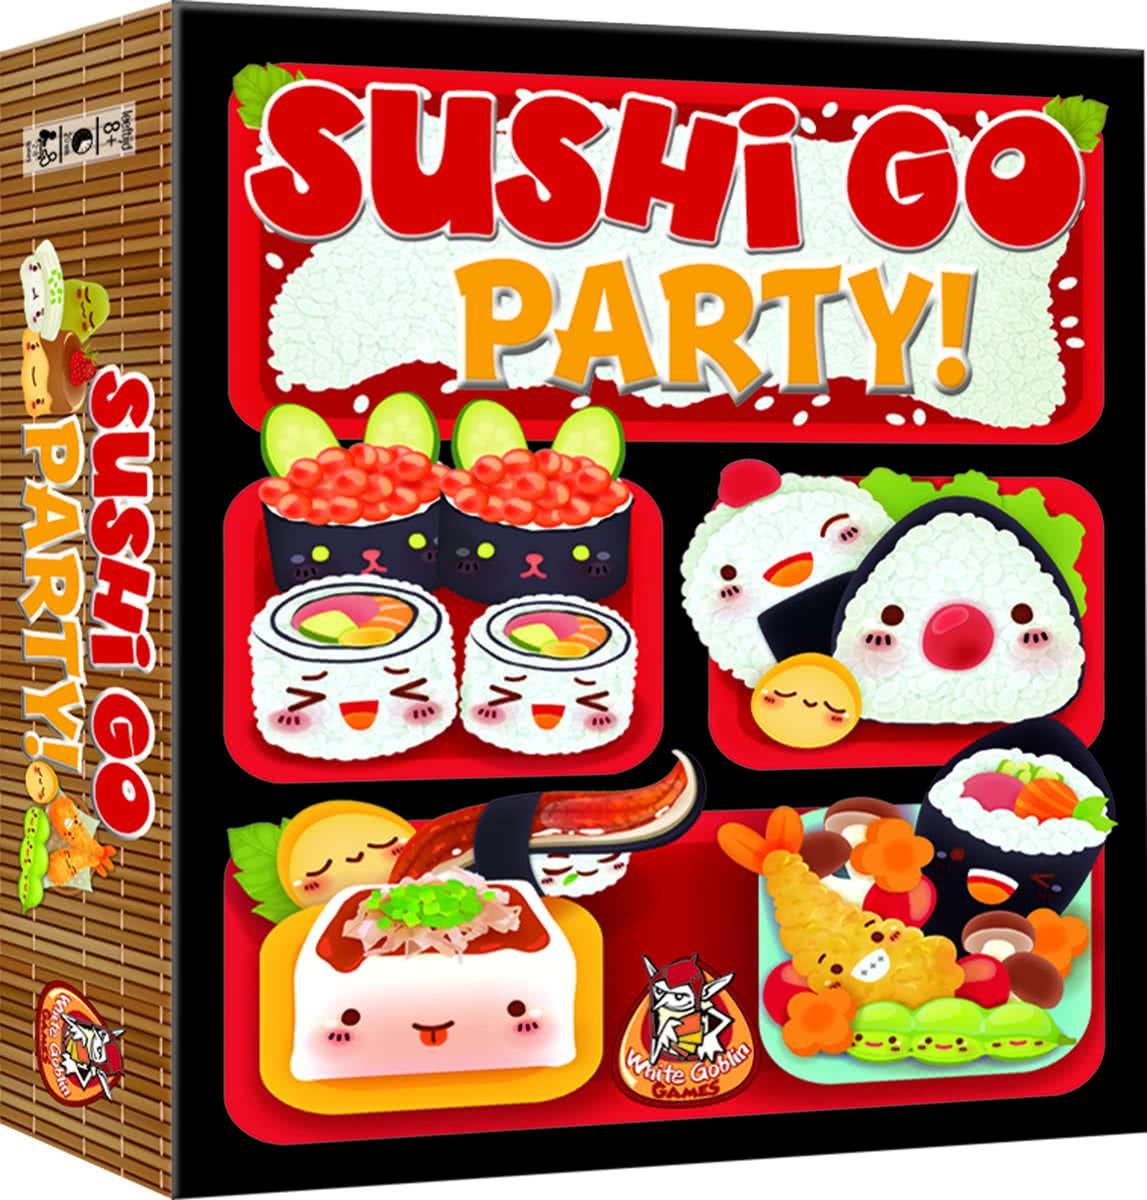 Sushi Go Party! description reviews